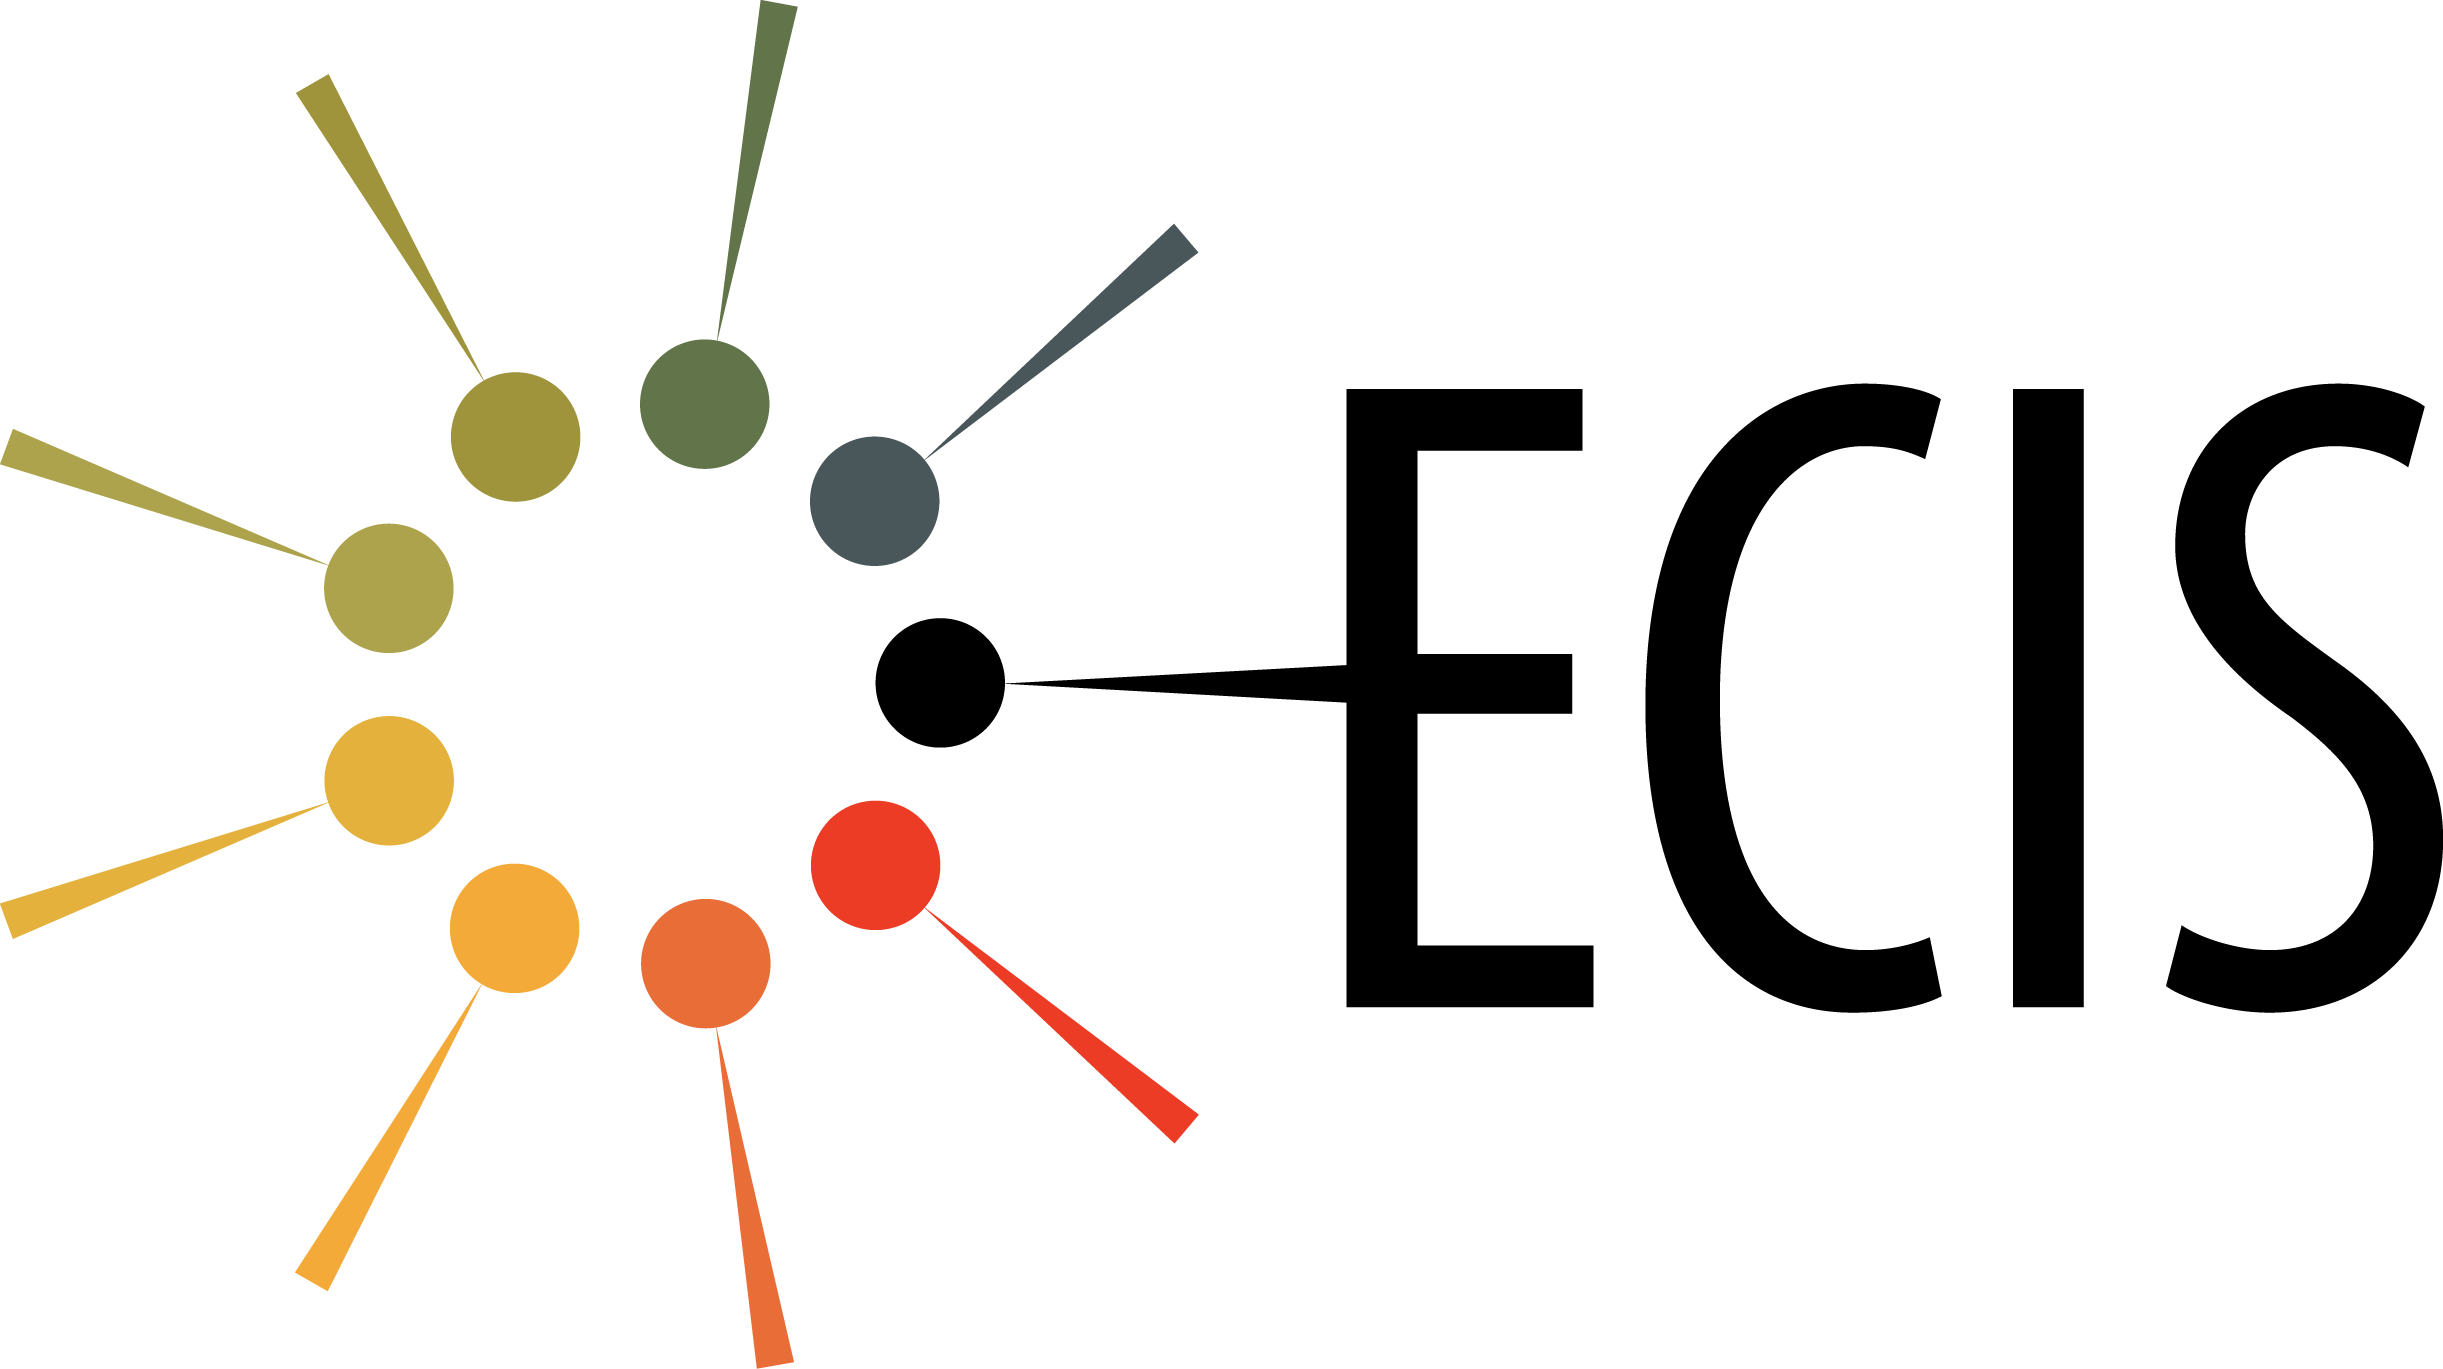 ECIS_logo_3